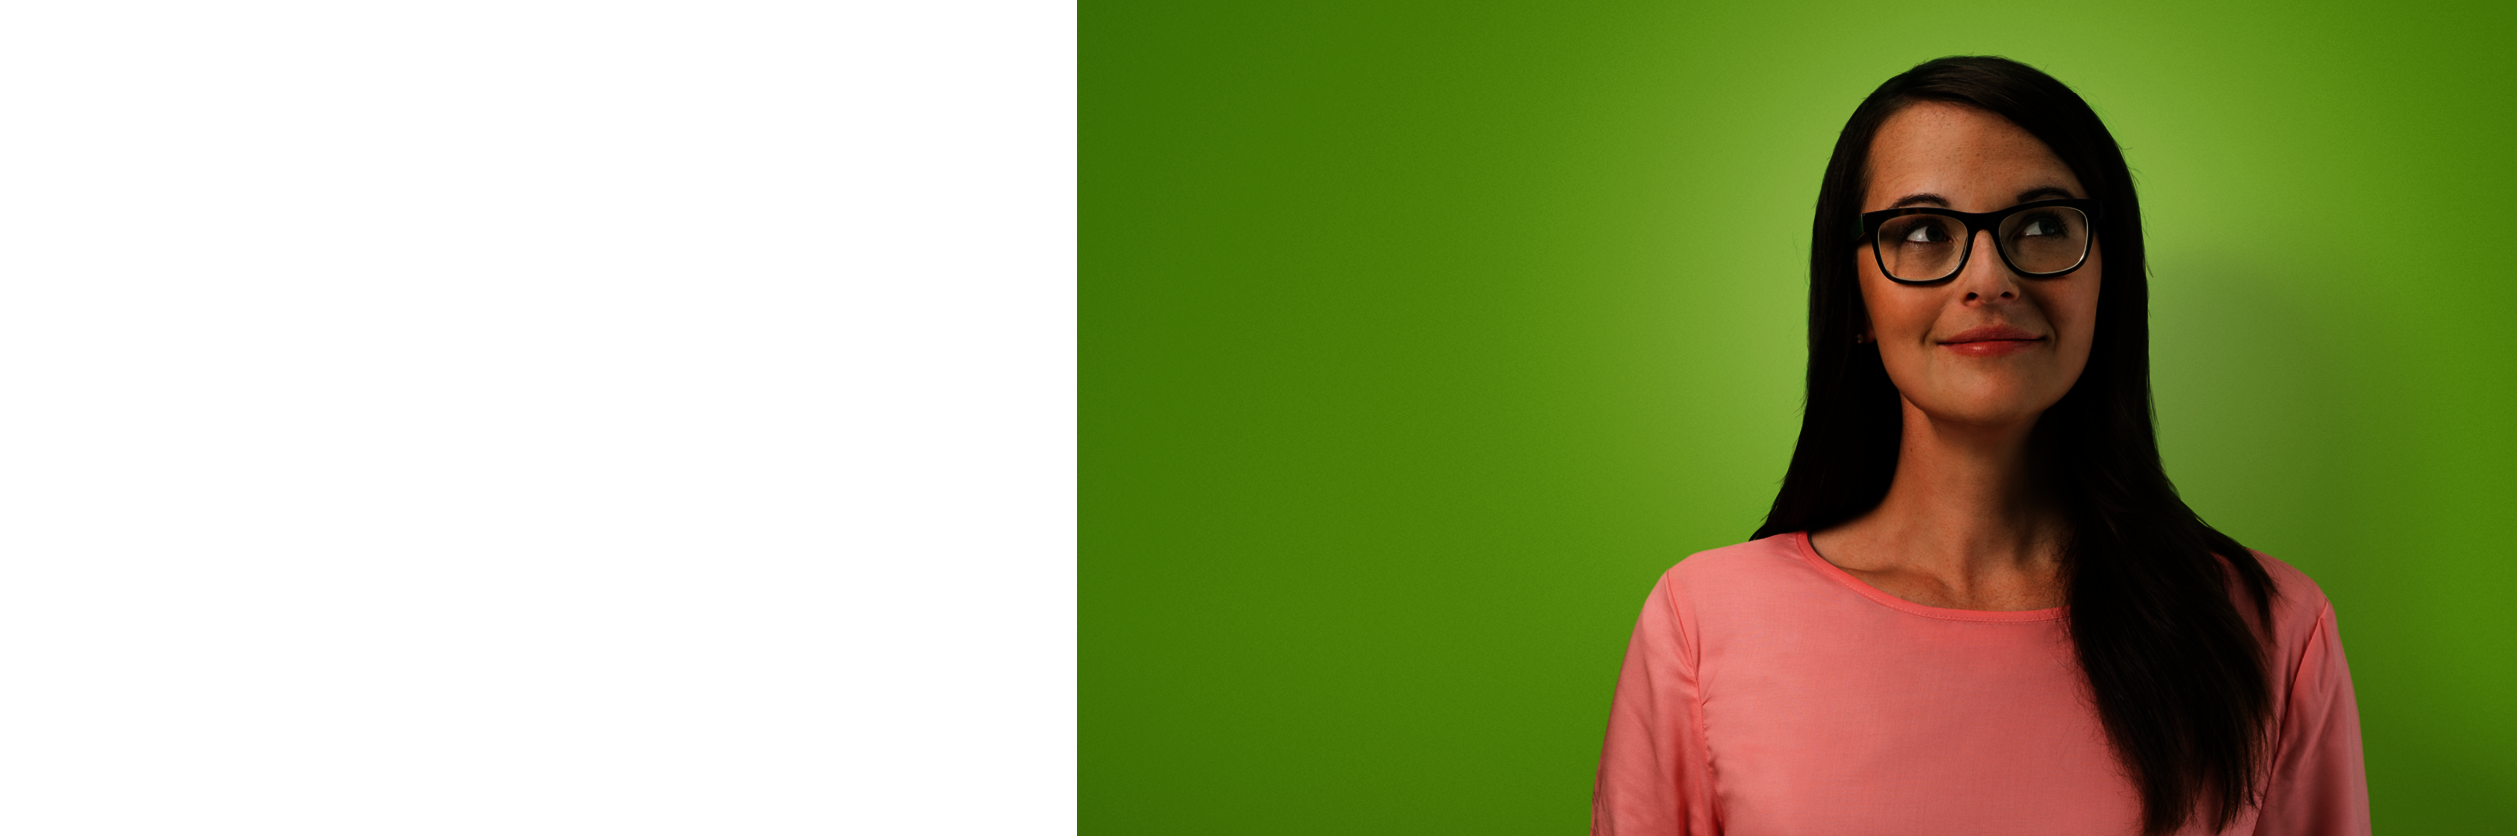 Eine Frau mit Brille auf grünen Hintergrund.